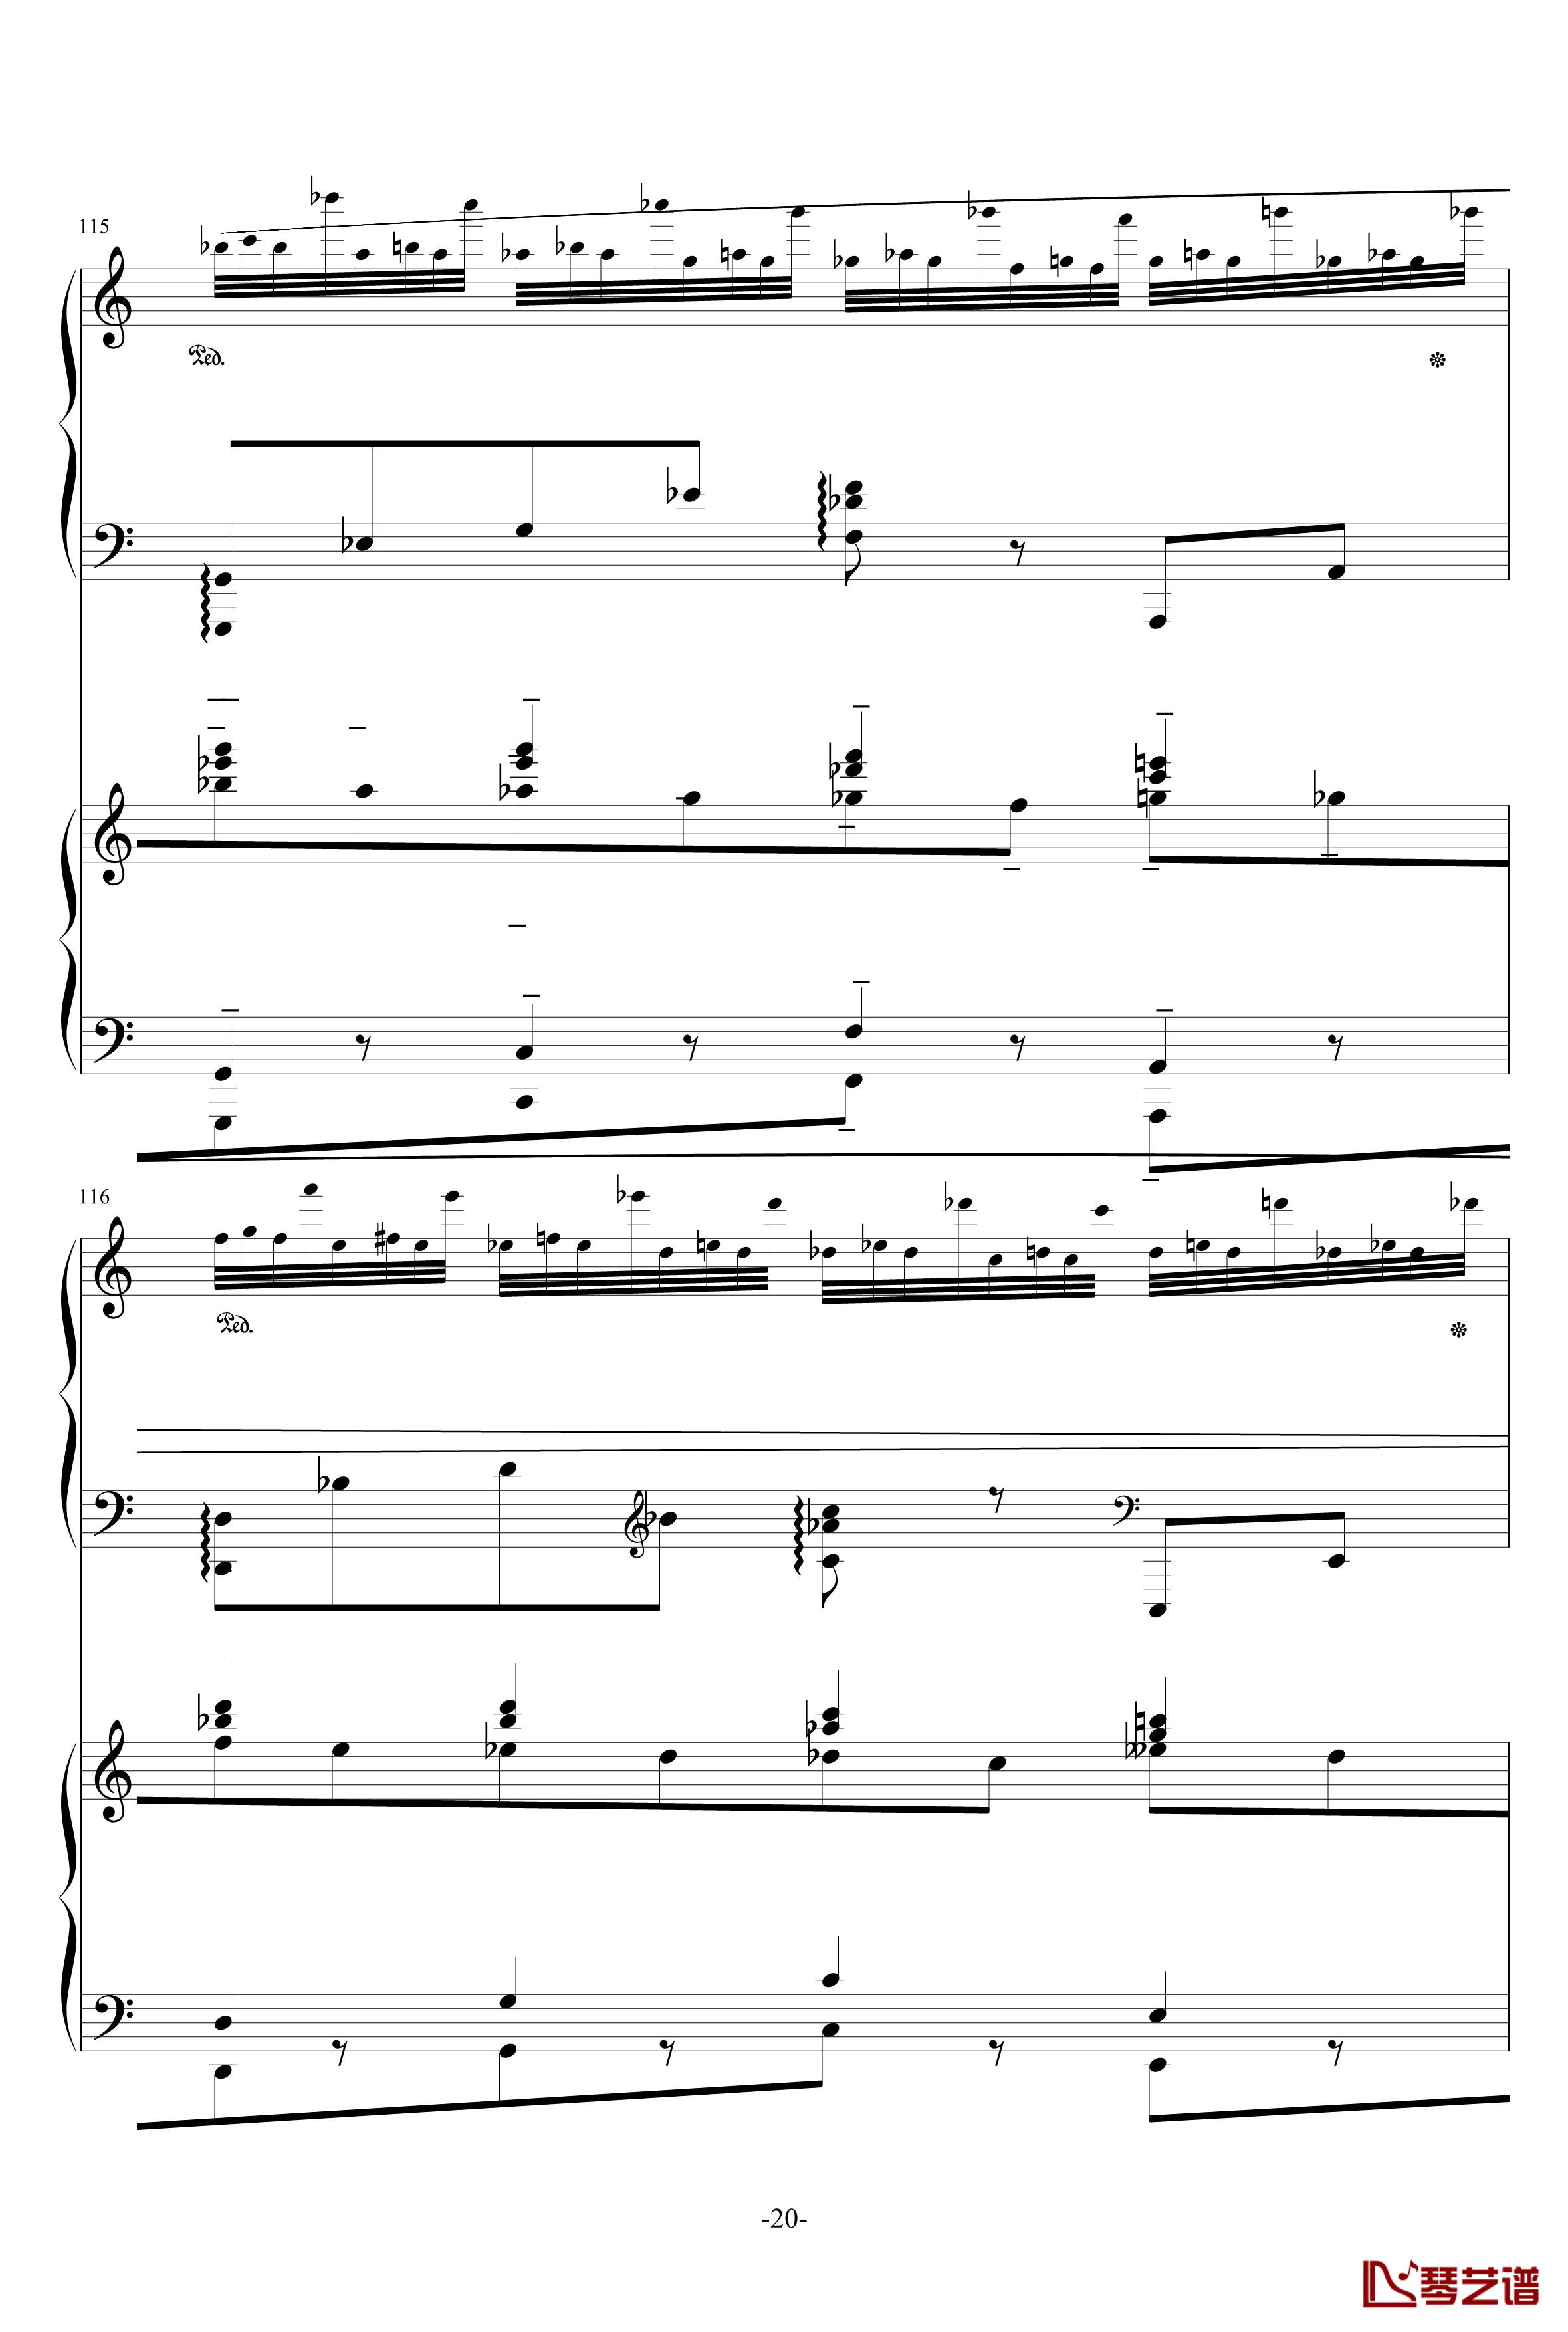 普罗科菲耶夫第三钢琴协奏曲第二乐章钢琴谱20